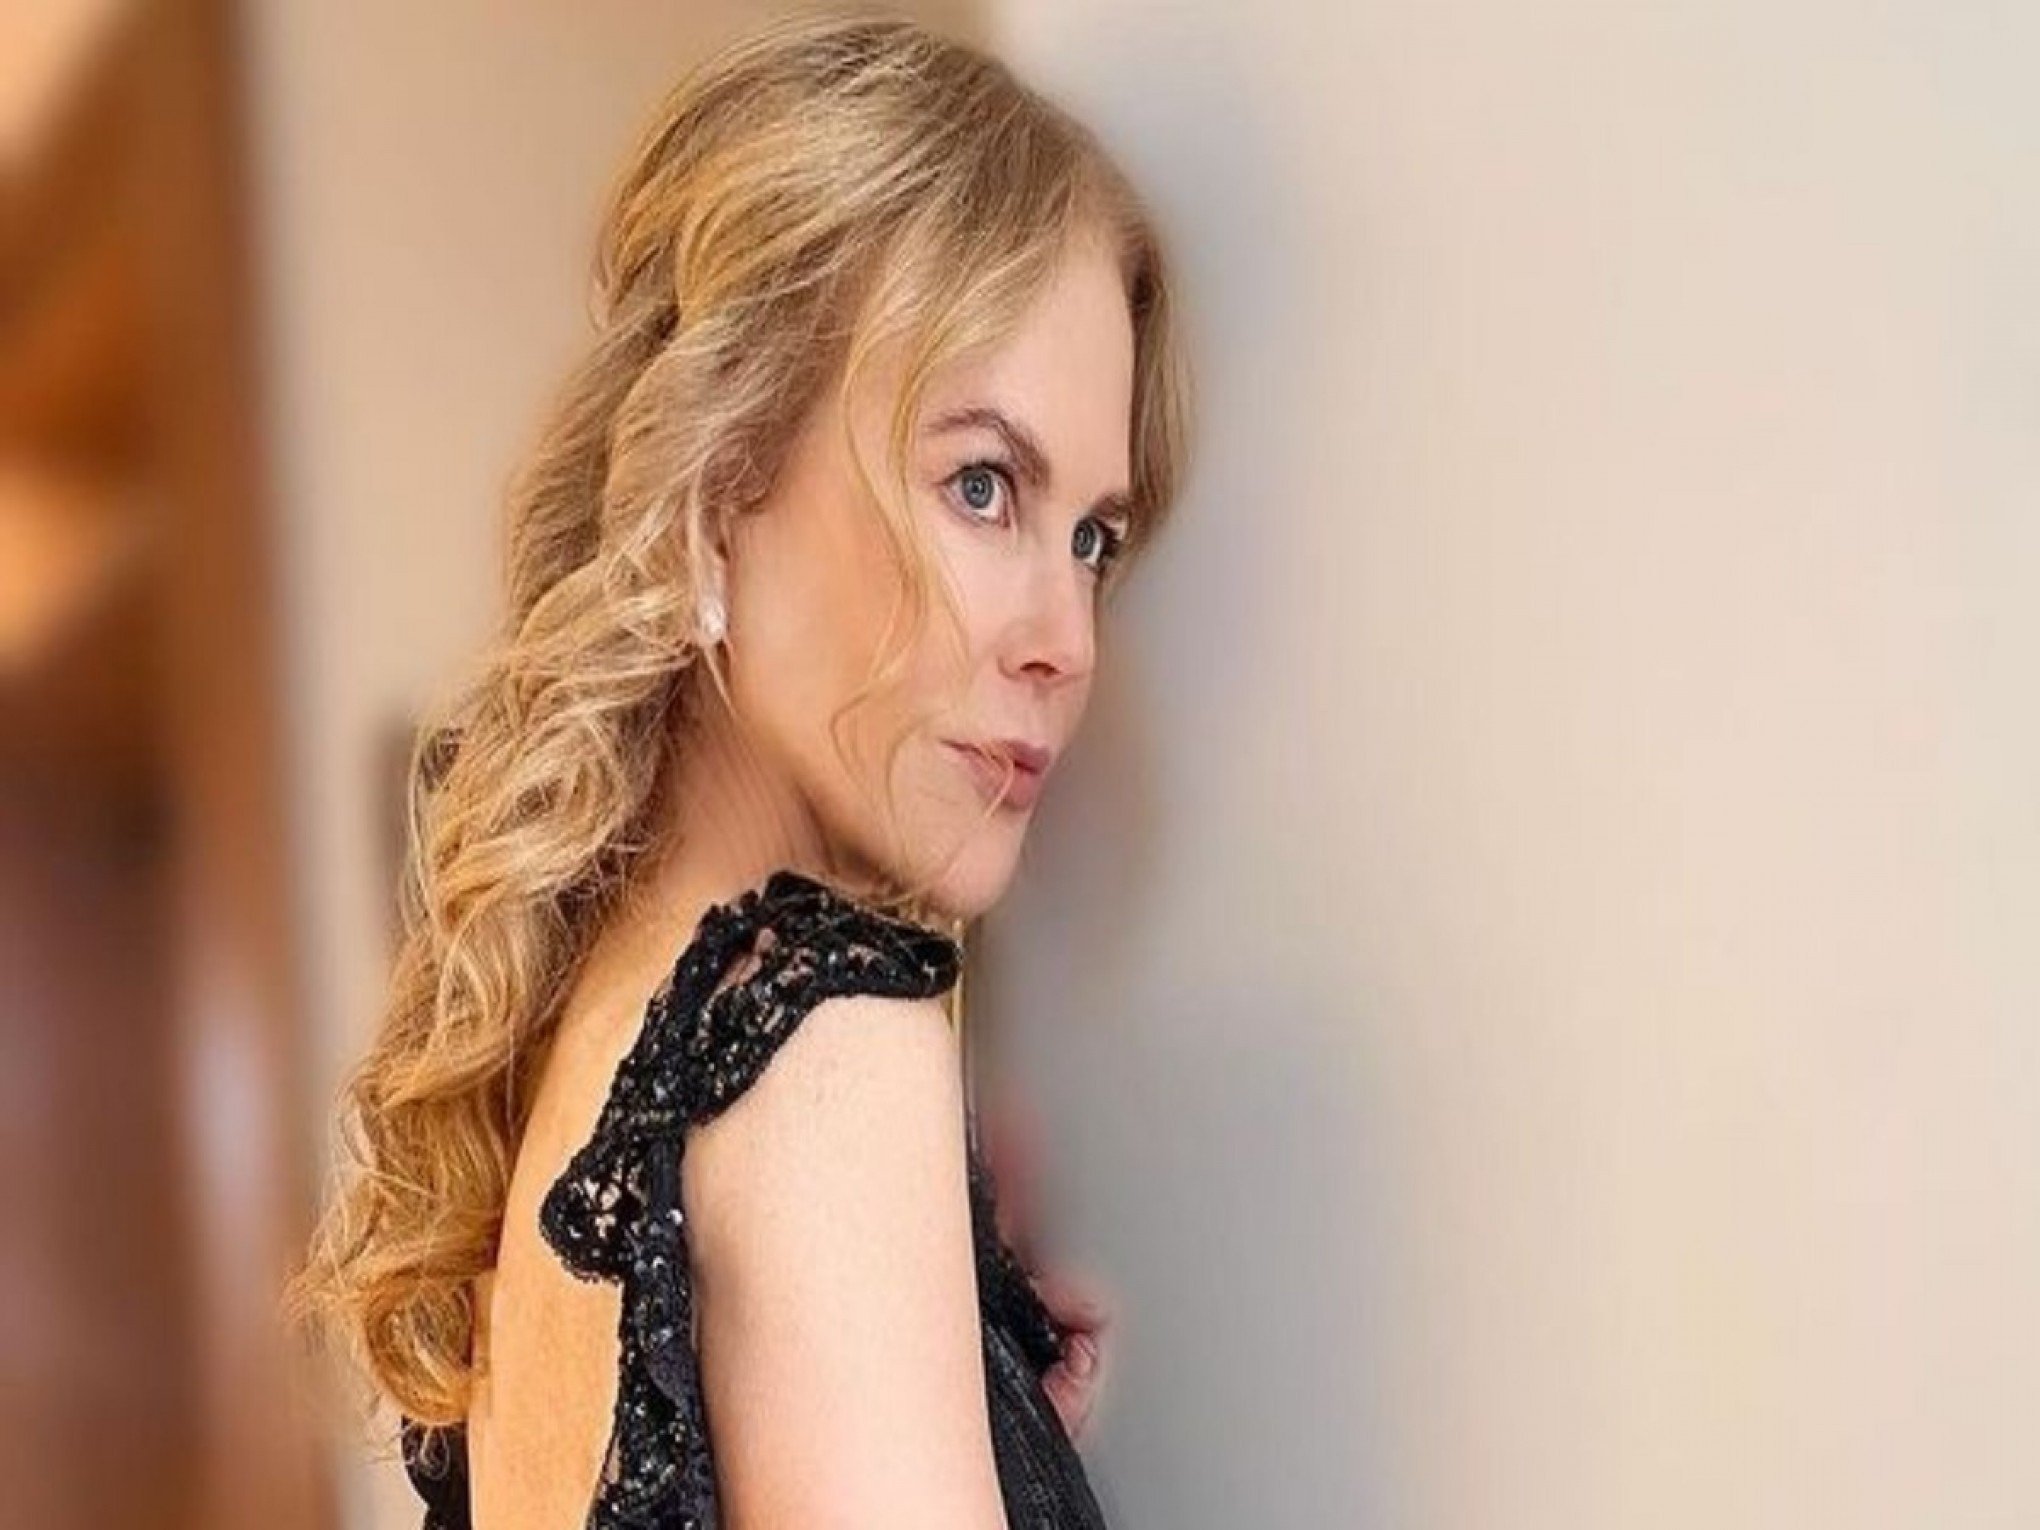 Nicole Kidman vai estrelar série da HBO inspirada em crime real